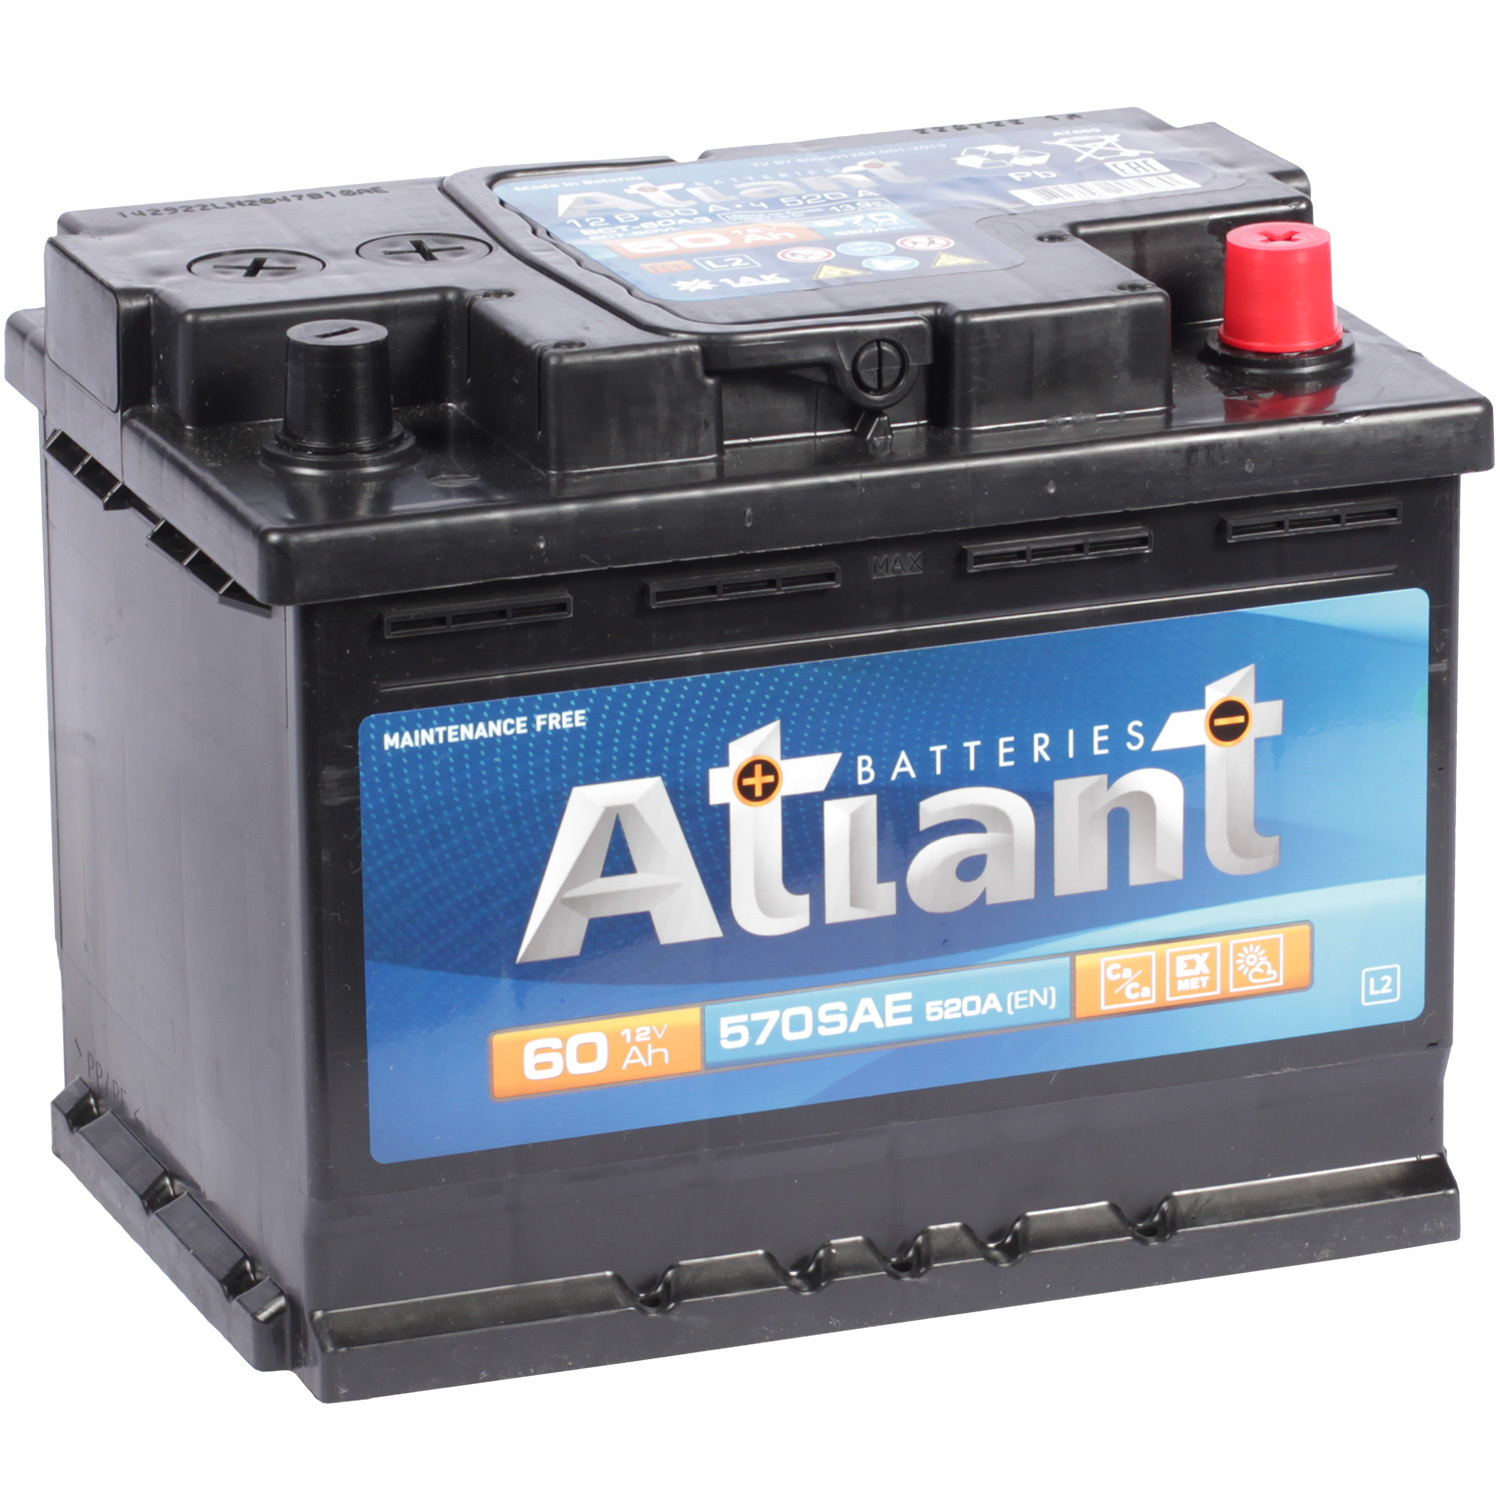 Atlant Автомобильный аккумулятор Atlant 60 Ач обратная полярность L2 uno автомобильный аккумулятор uno 60 ач обратная полярность l2